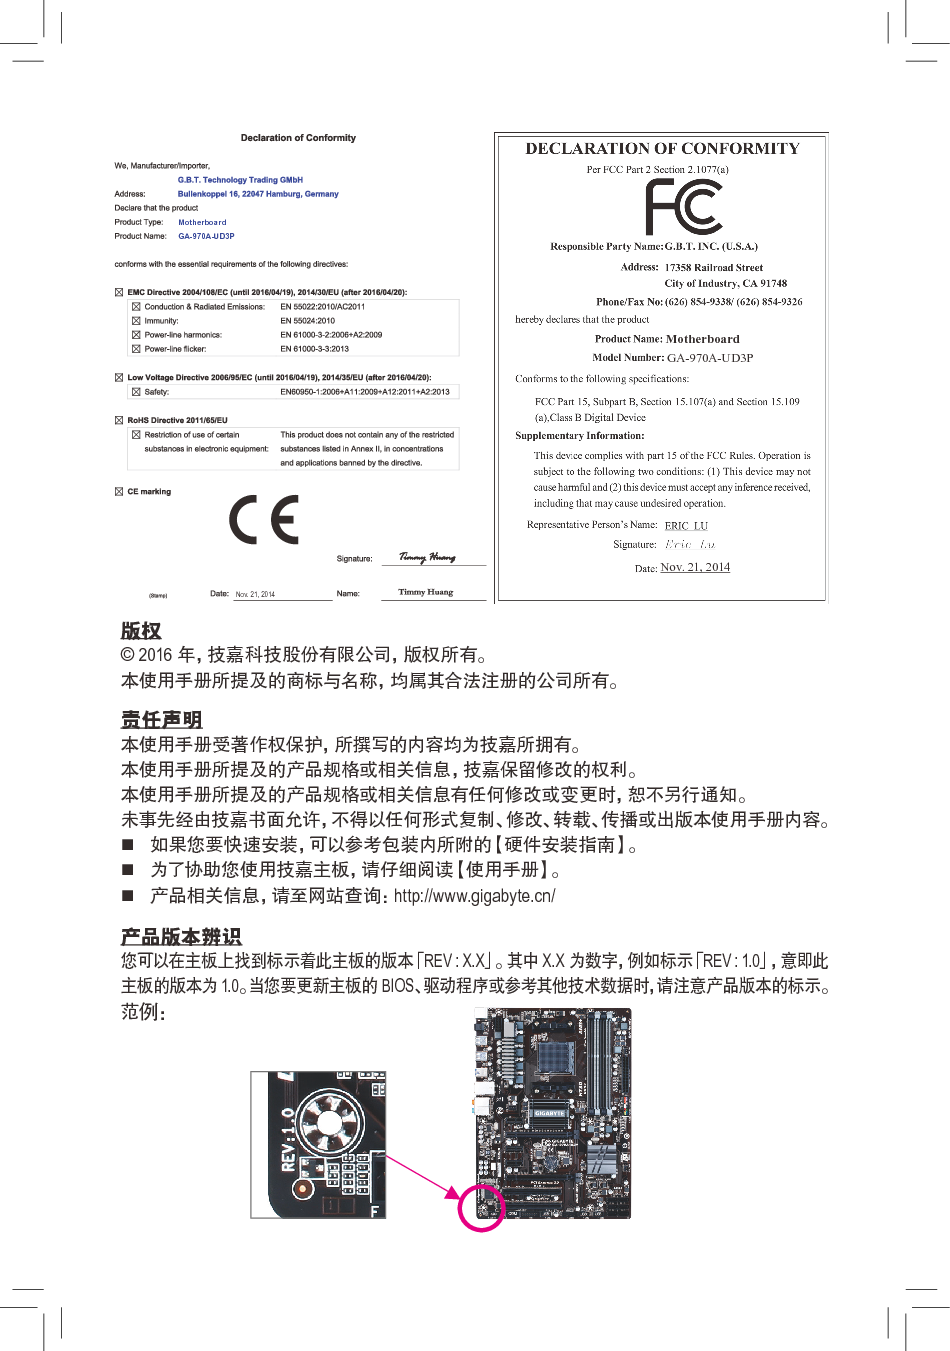 技嘉 Gigabyte GA-970A-UD3P 2101版 使用手册 第1页